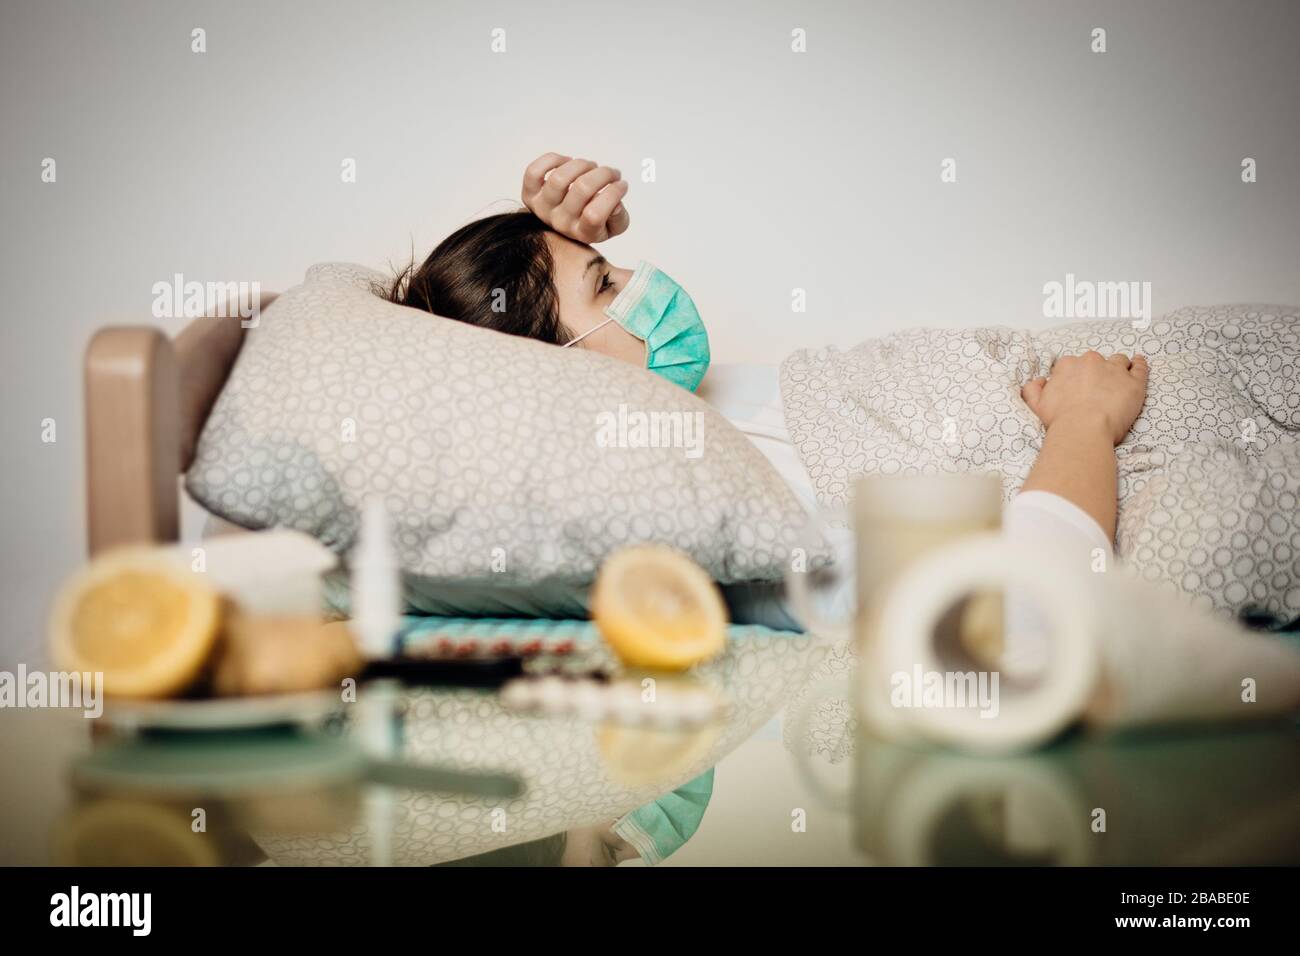 Kranke Frau mit Maske im Quarantänebett Selbstisolierung.Coronavirus Covid-19 Patient mit Pneumonie Krankheitssymptome.Prävention und Gesundheitspflege behandeln Stockfoto